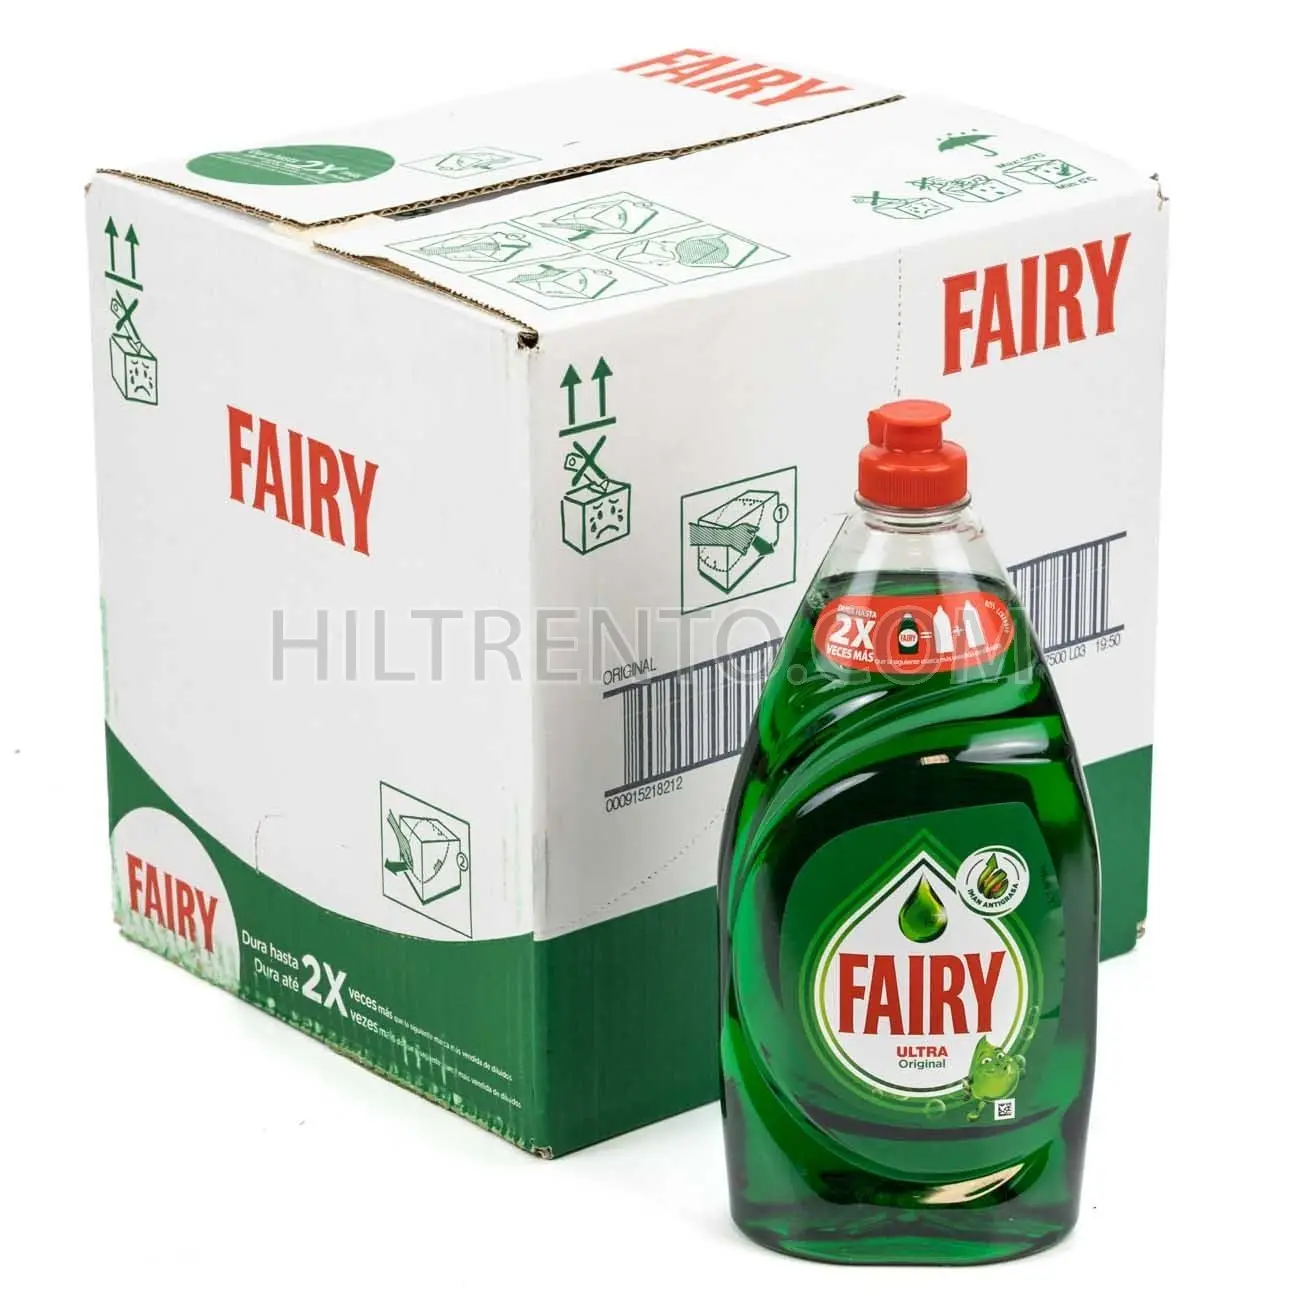 Fairy Non-Bio Washing Liquid Detergent 24 Washes